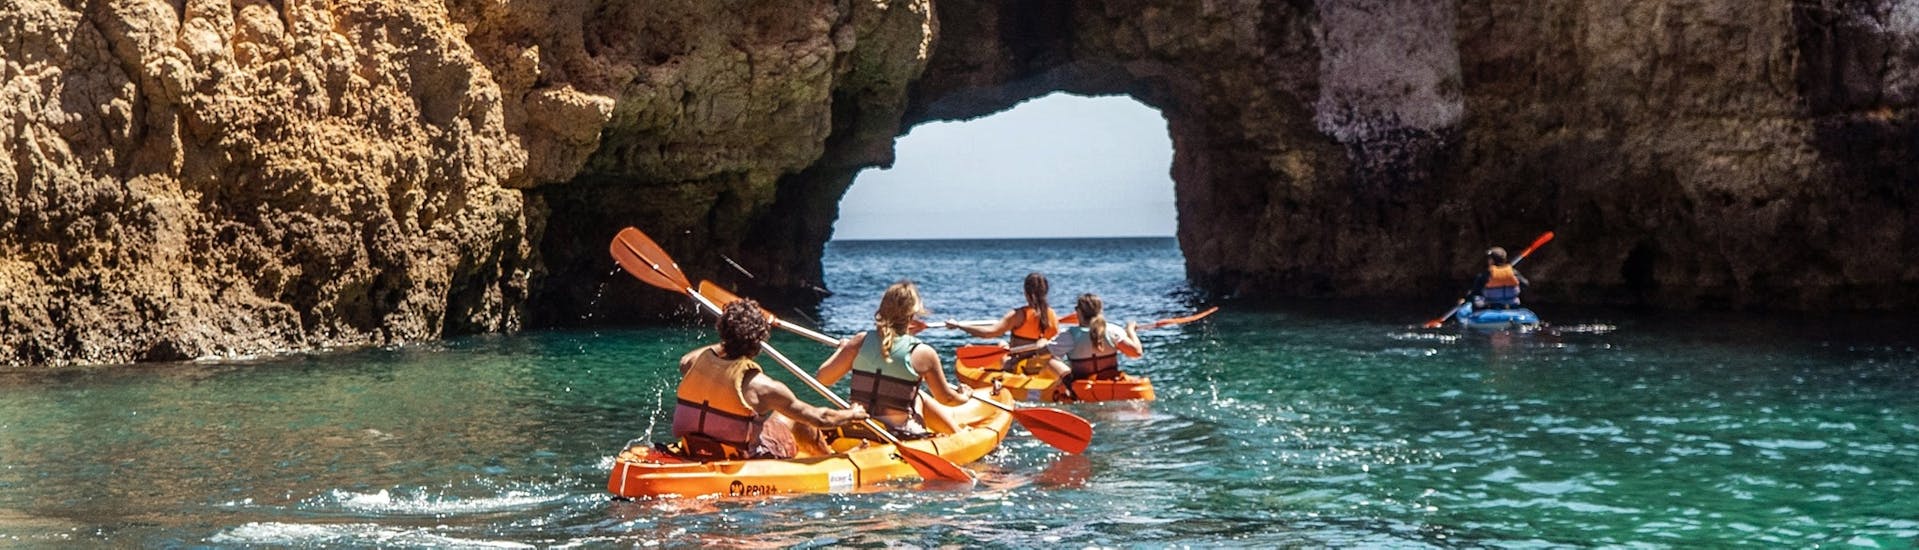 Eine Gruppe von Freunden paddelt während einer Seekajaktour zu den Grotten von Ponta da Piedade mit Discover Tours Lagos.